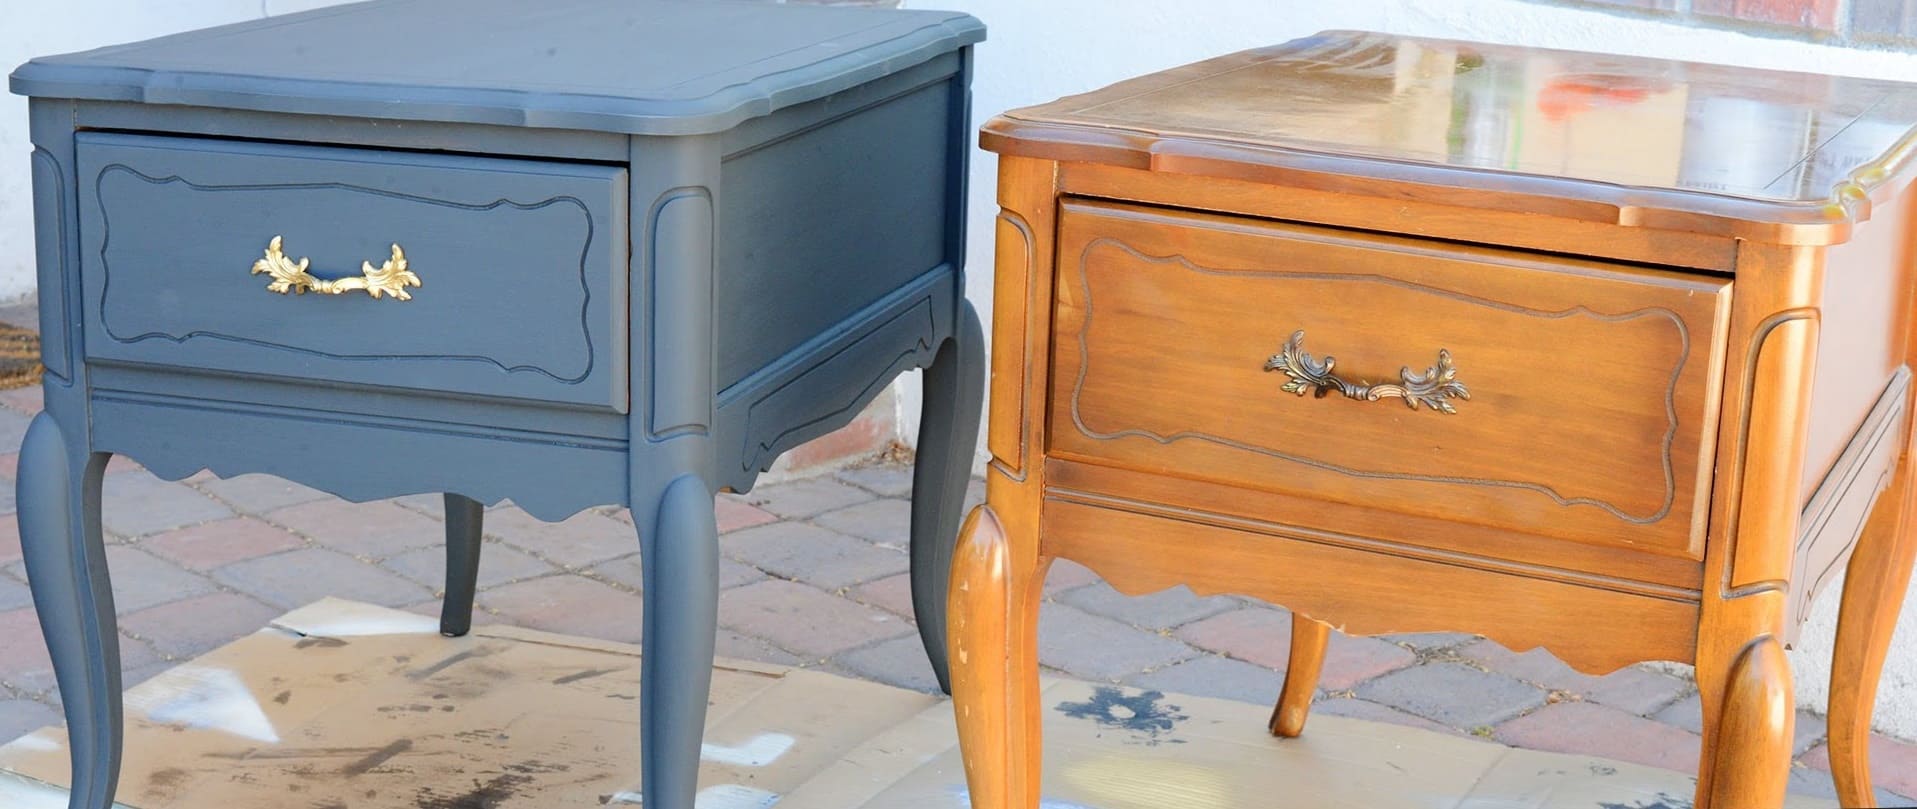 Покраска мебели из МДФ: чем можно красить, как правильно сделать покраску